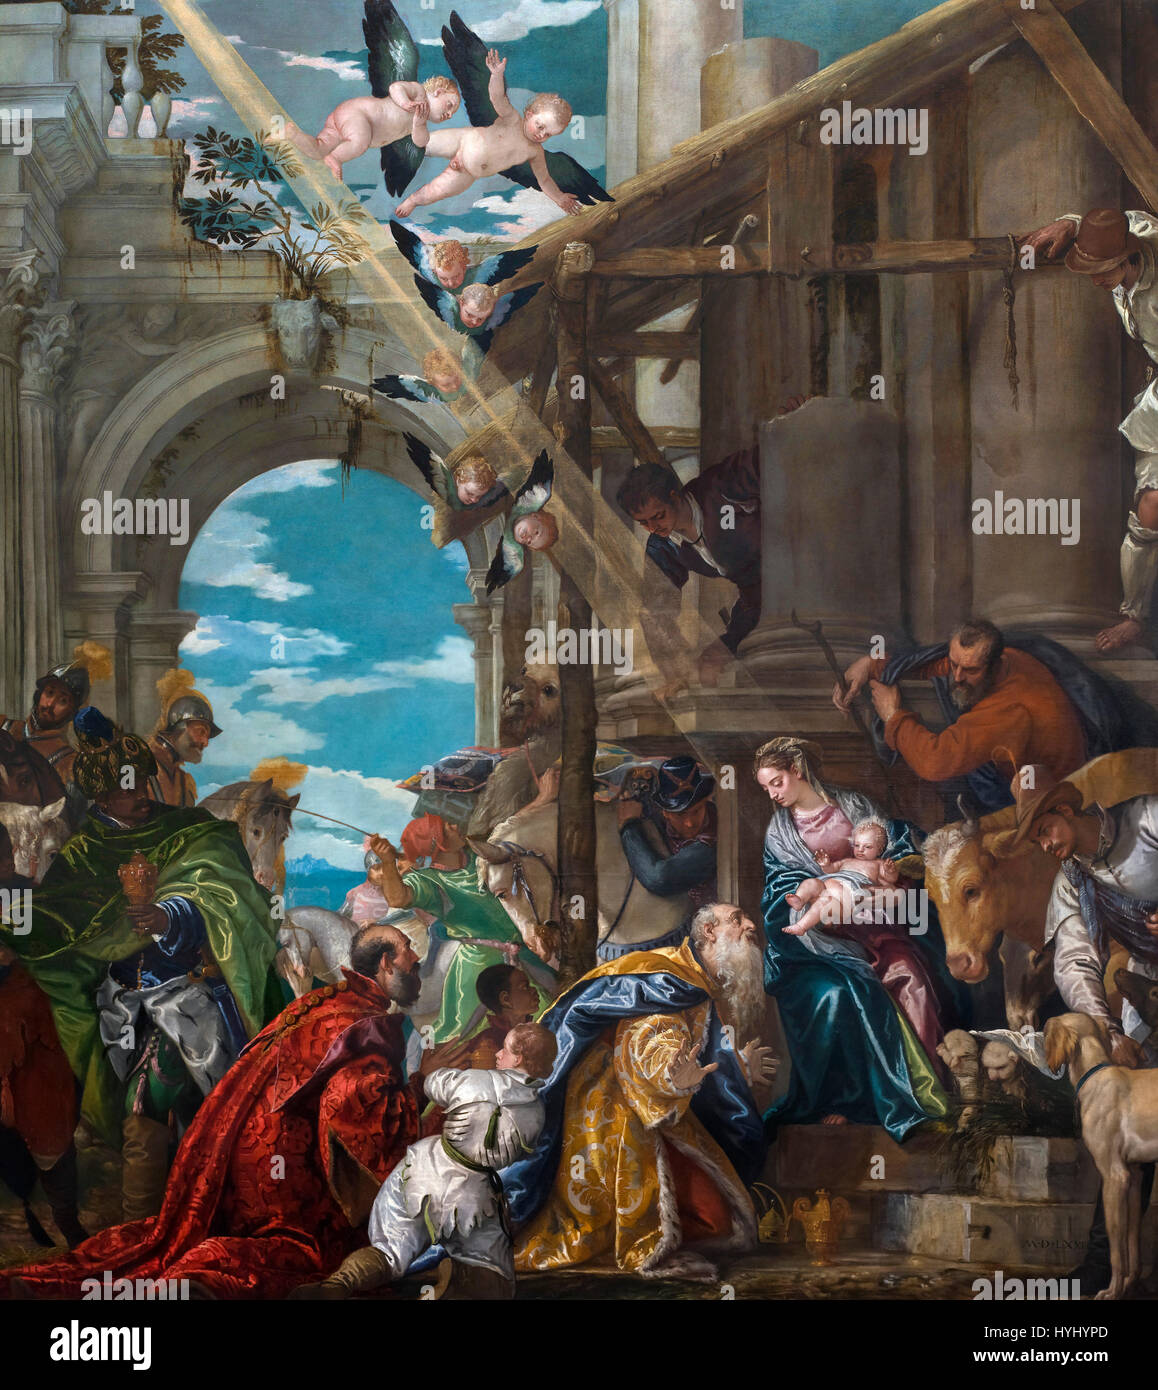 La adoración de los Reyes (adoración de los magos) por Paolo Veronese (c.1528-1588), óleo sobre lienzo, 1573. Foto de stock